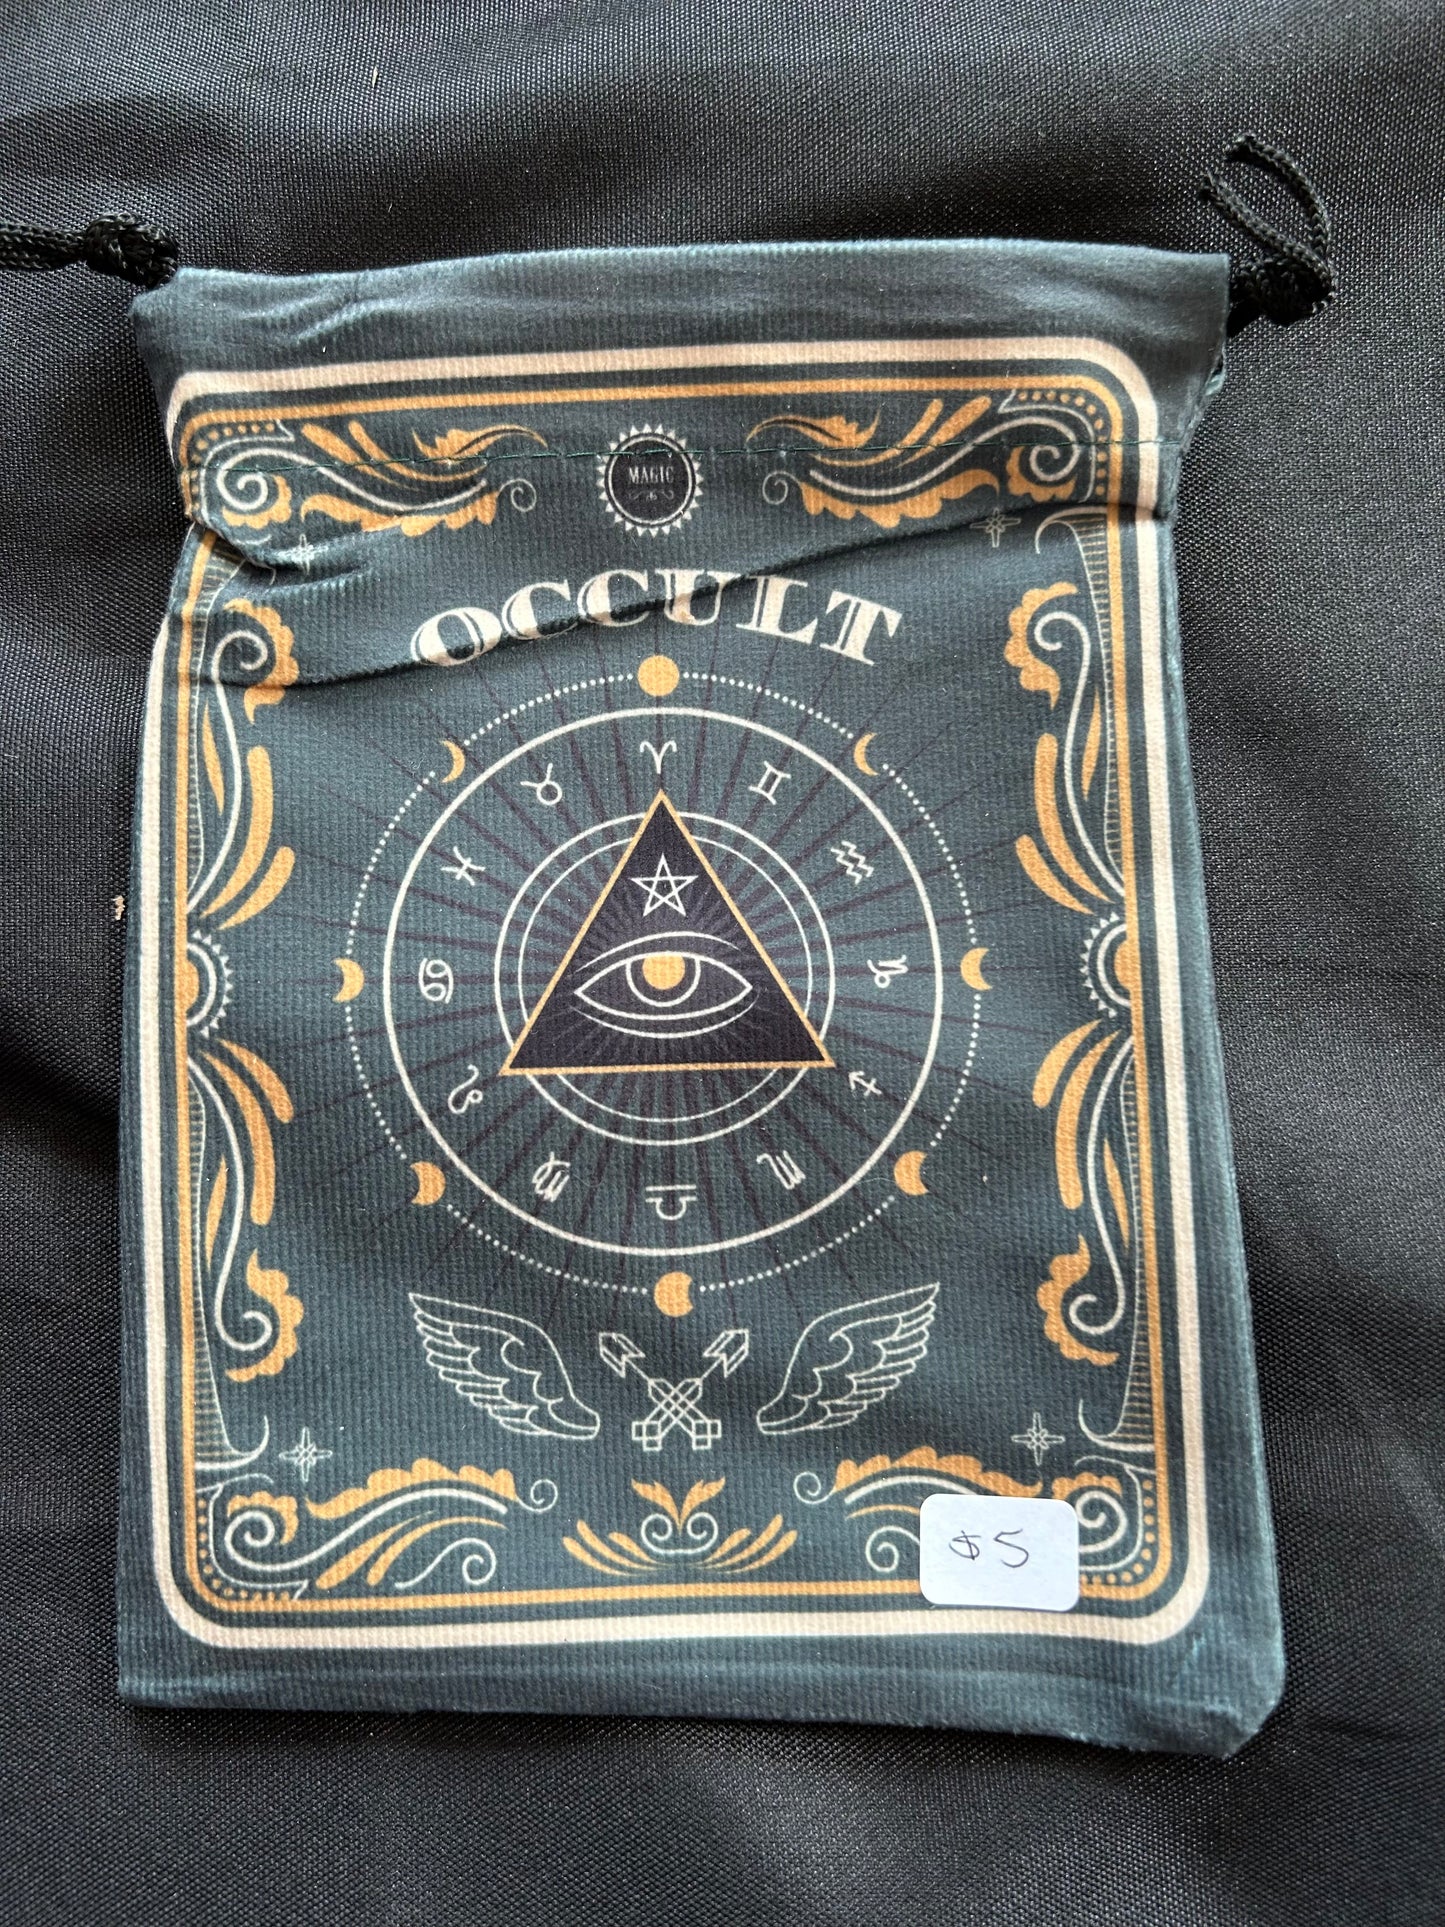 Tarot Bag